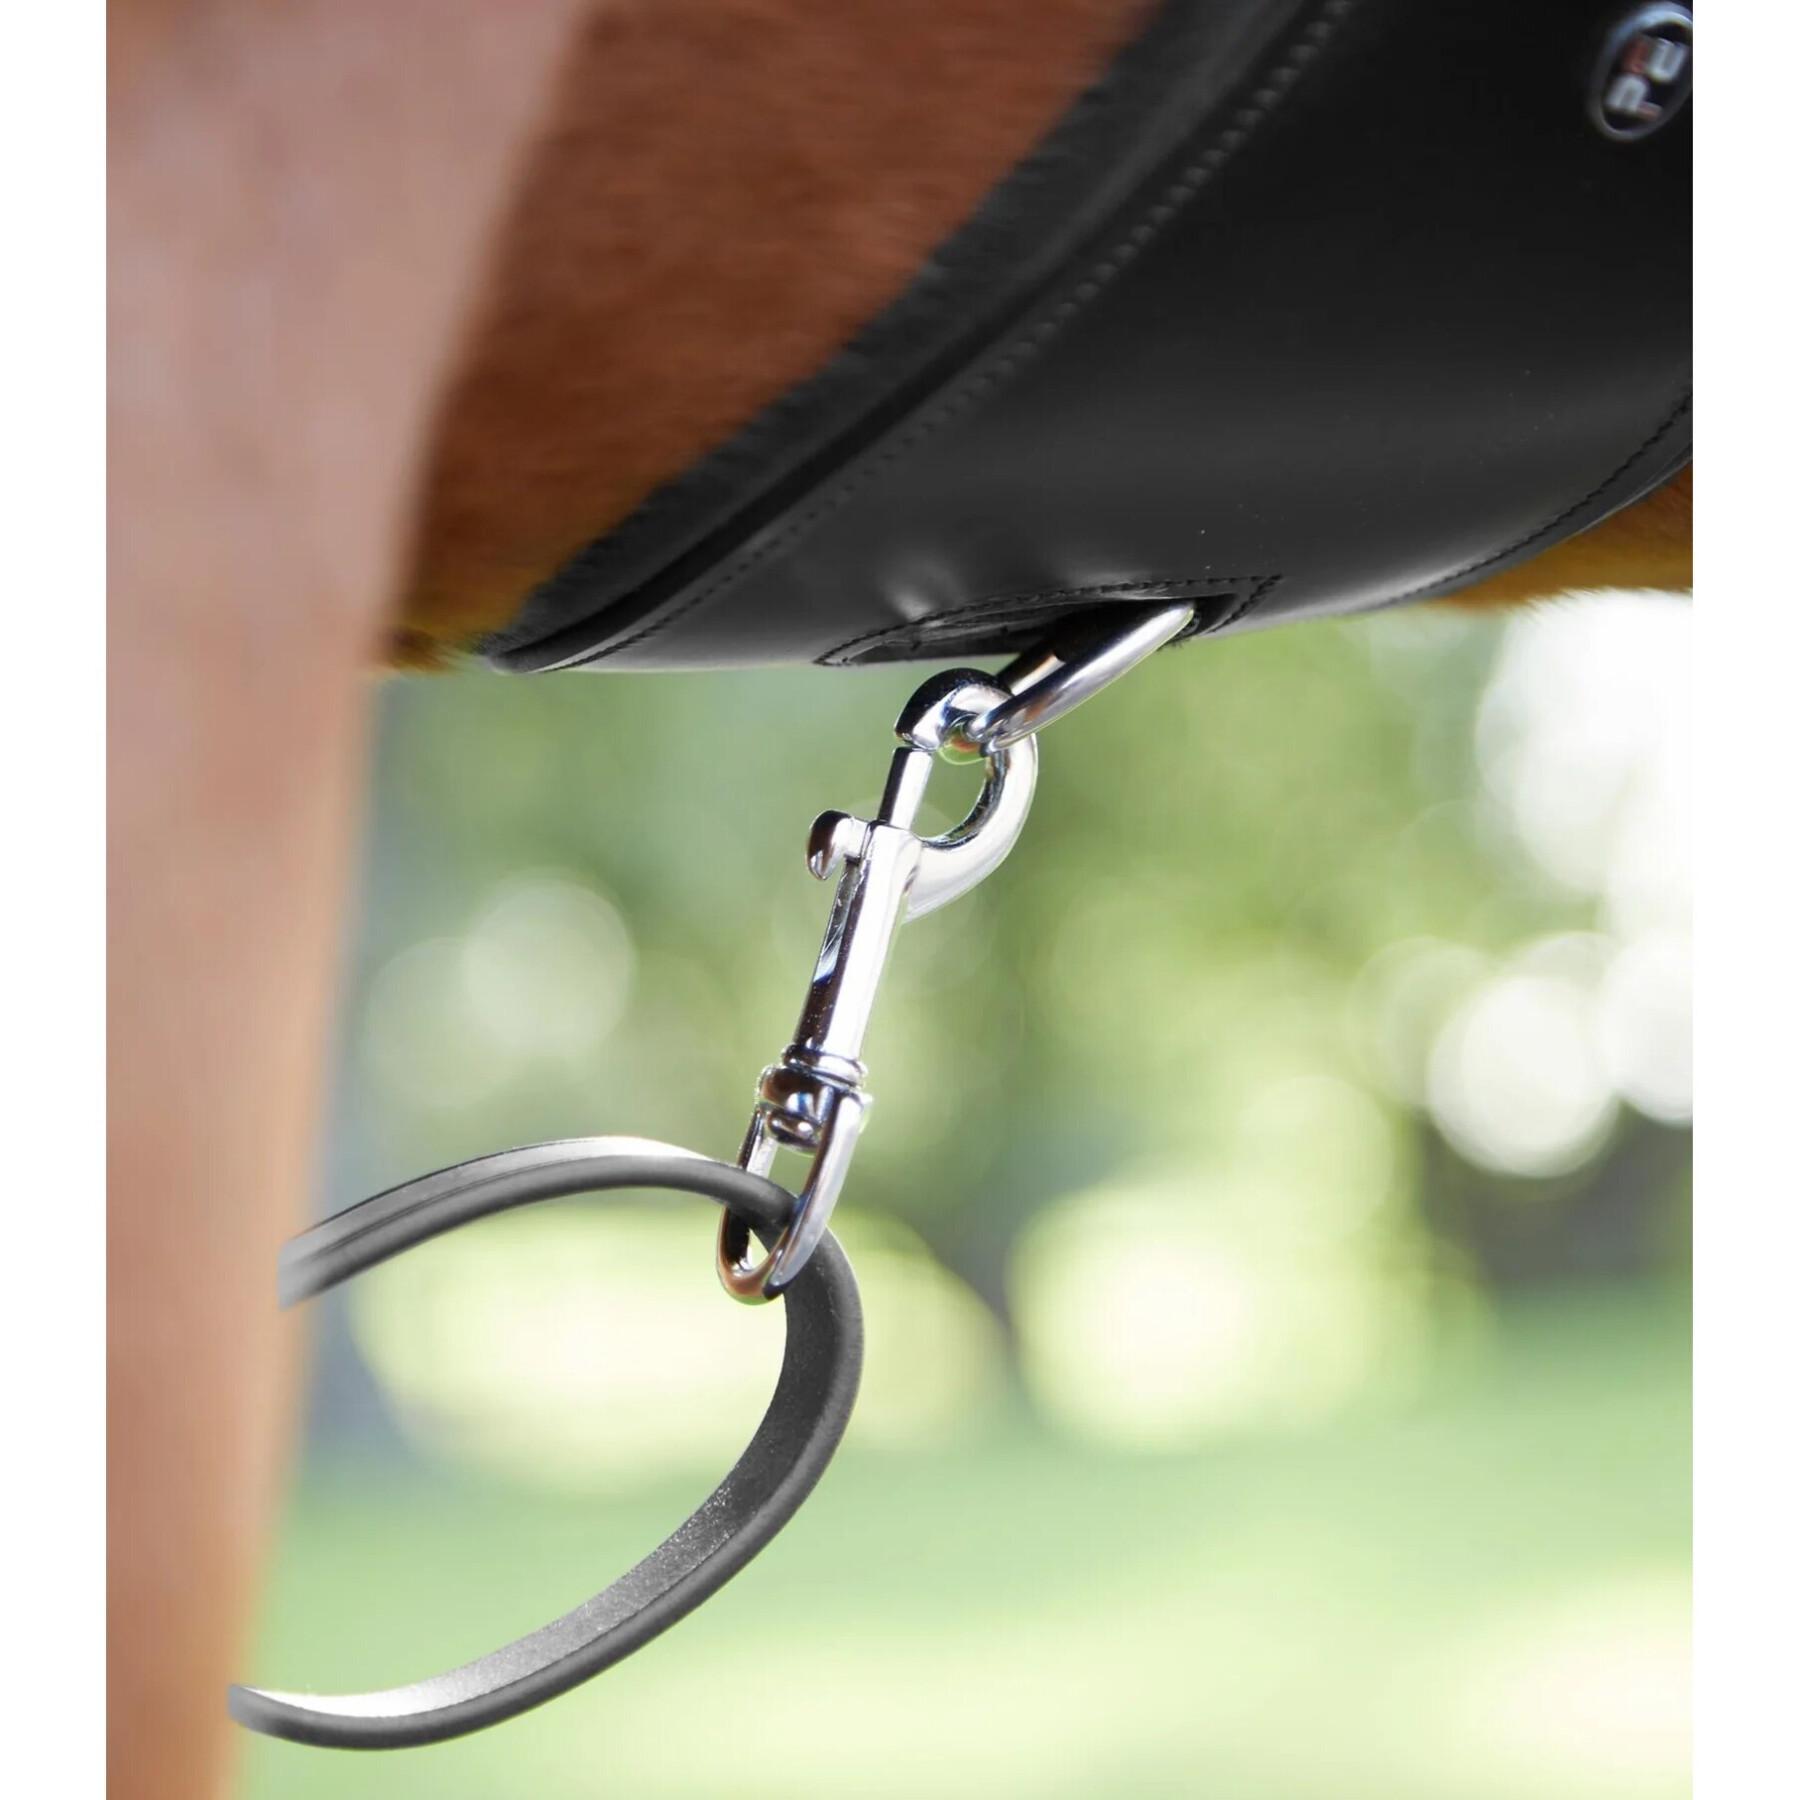 Vorderzeug für Pferde Premier Equine Norbello